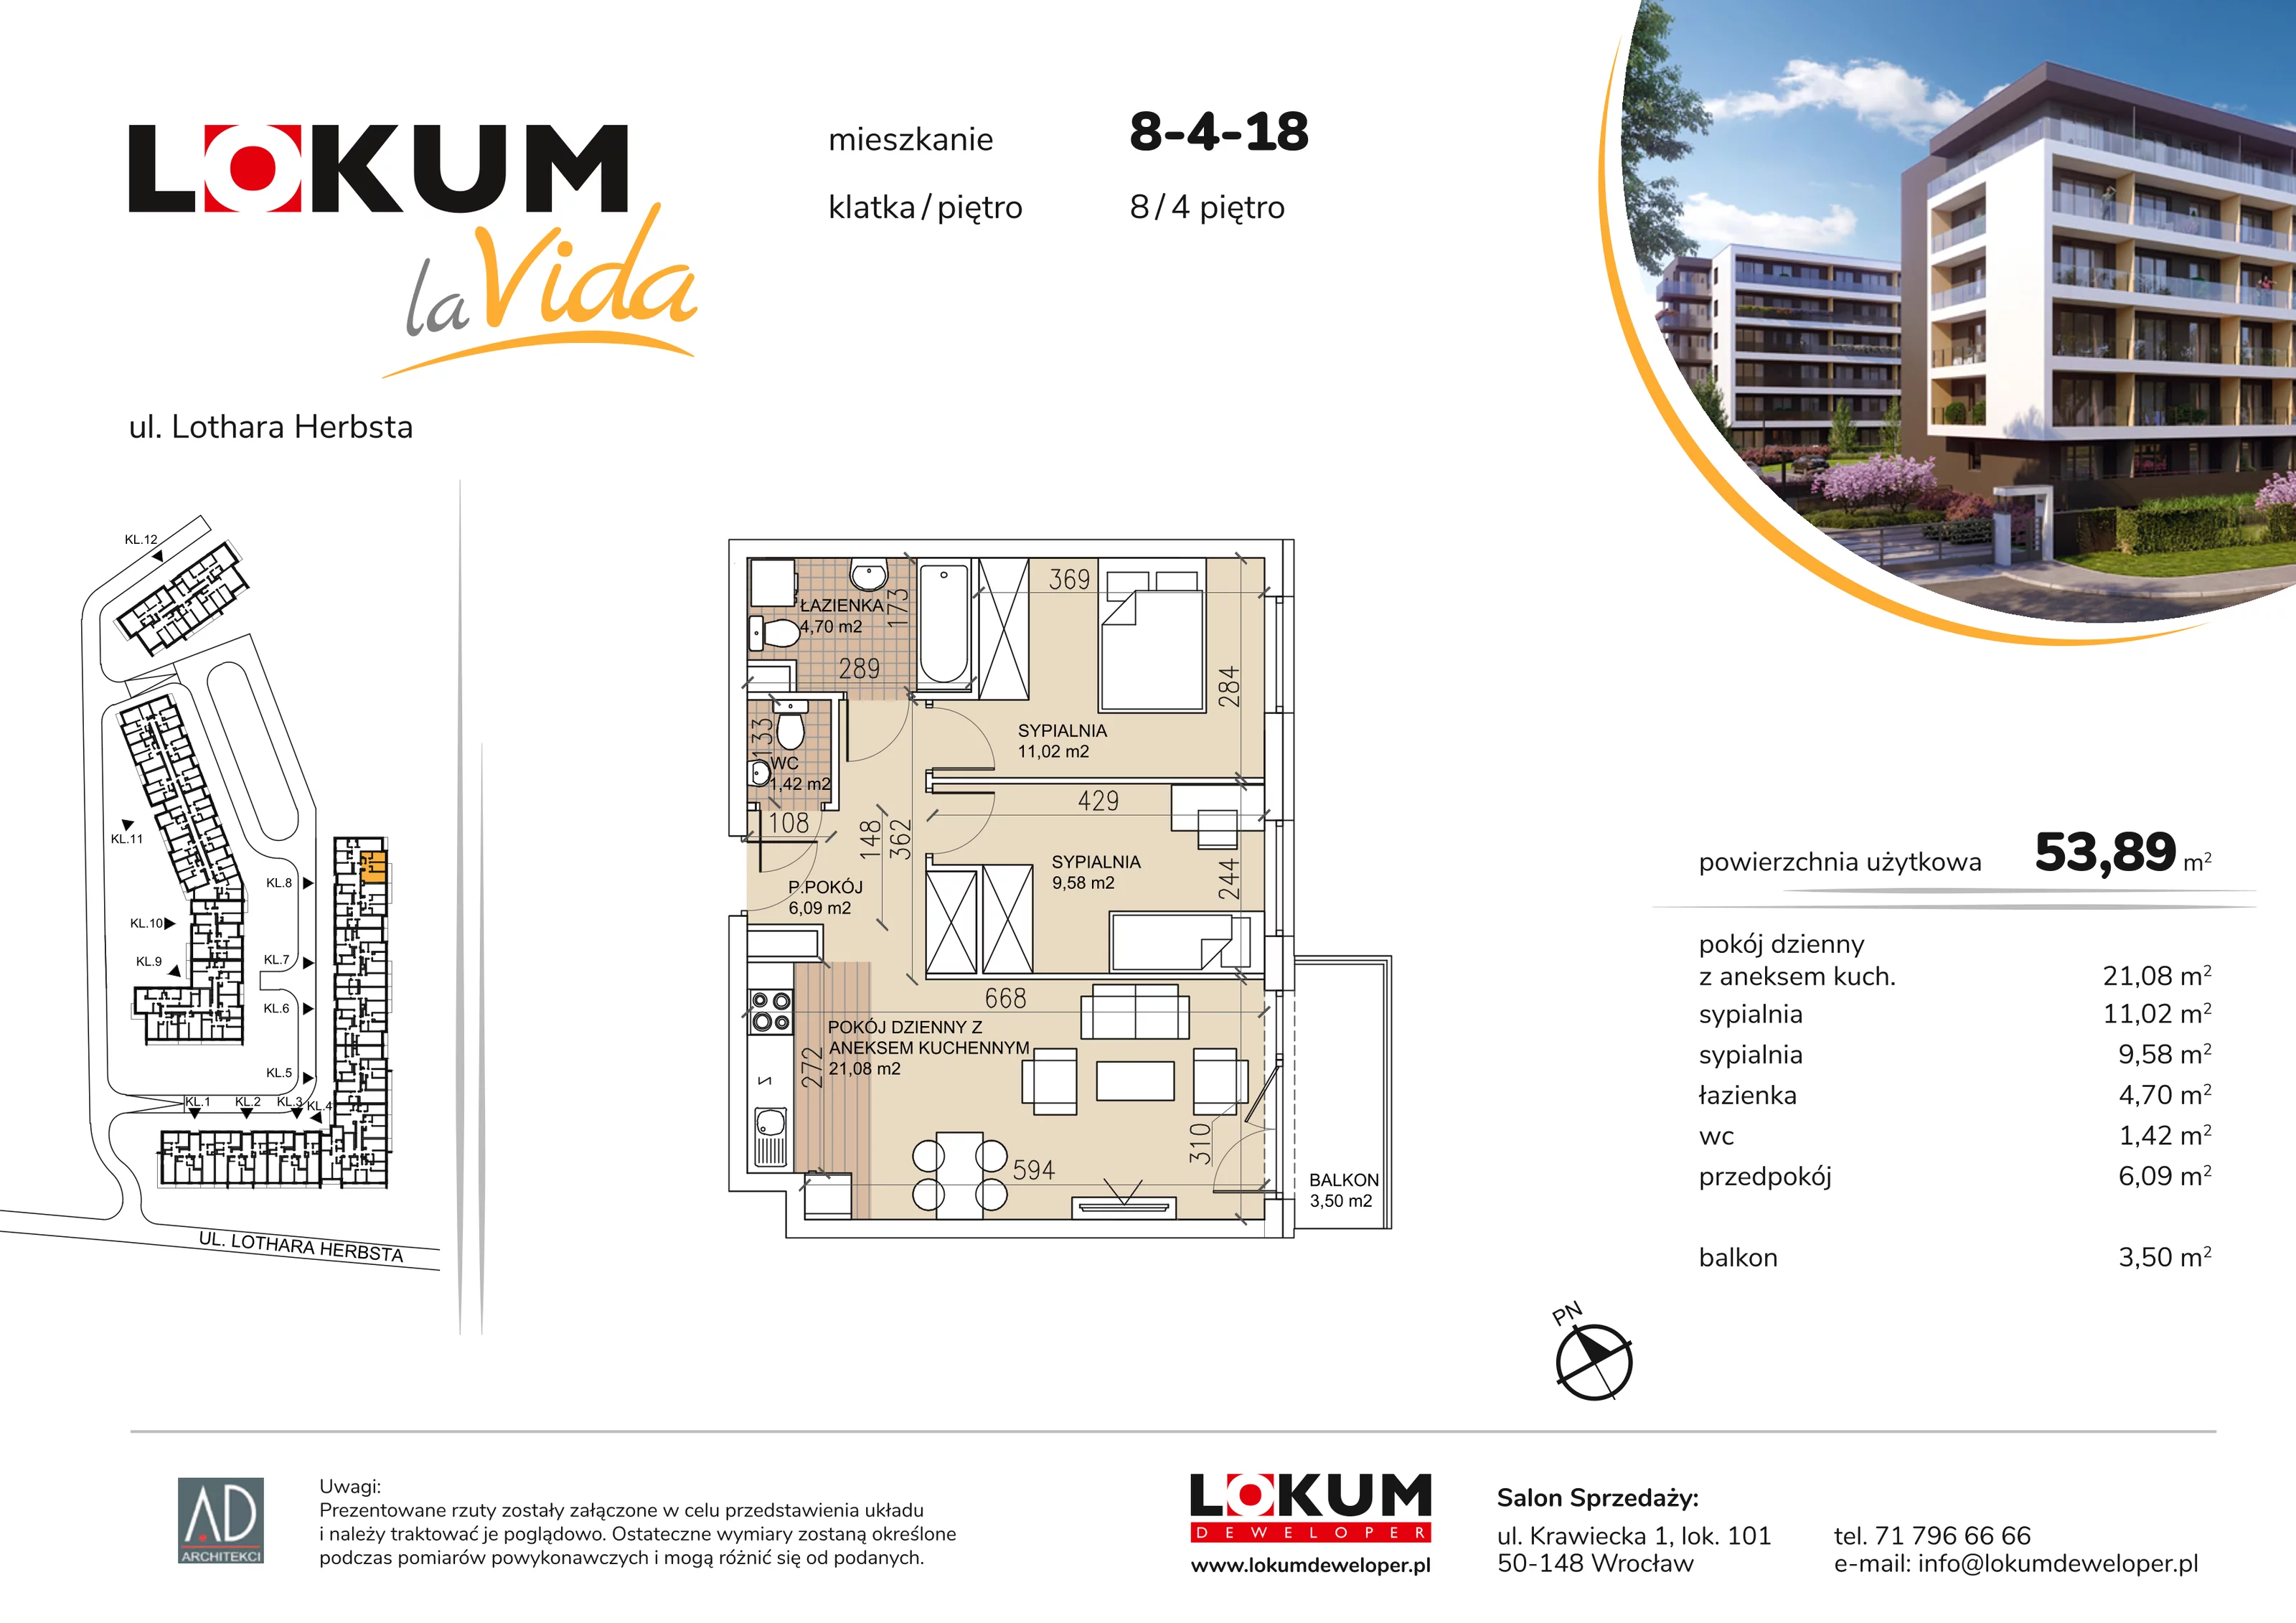 Mieszkanie 53,89 m², piętro 4, oferta nr 8-4-18, Lokum la Vida, Wrocław, Sołtysowice, ul. Lothara Herbsta